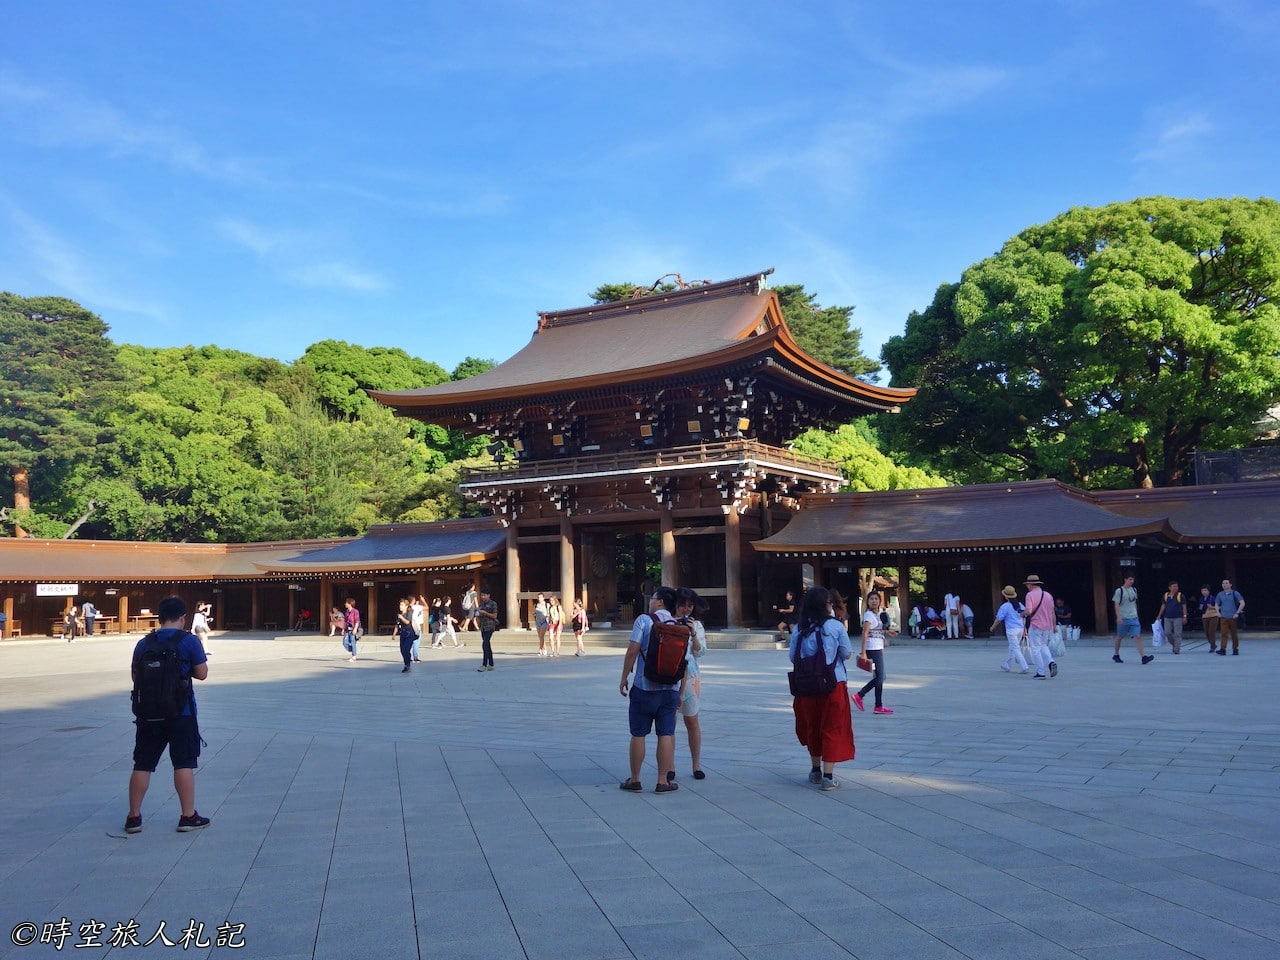 東京景點紀錄: 明治神宮、皇居